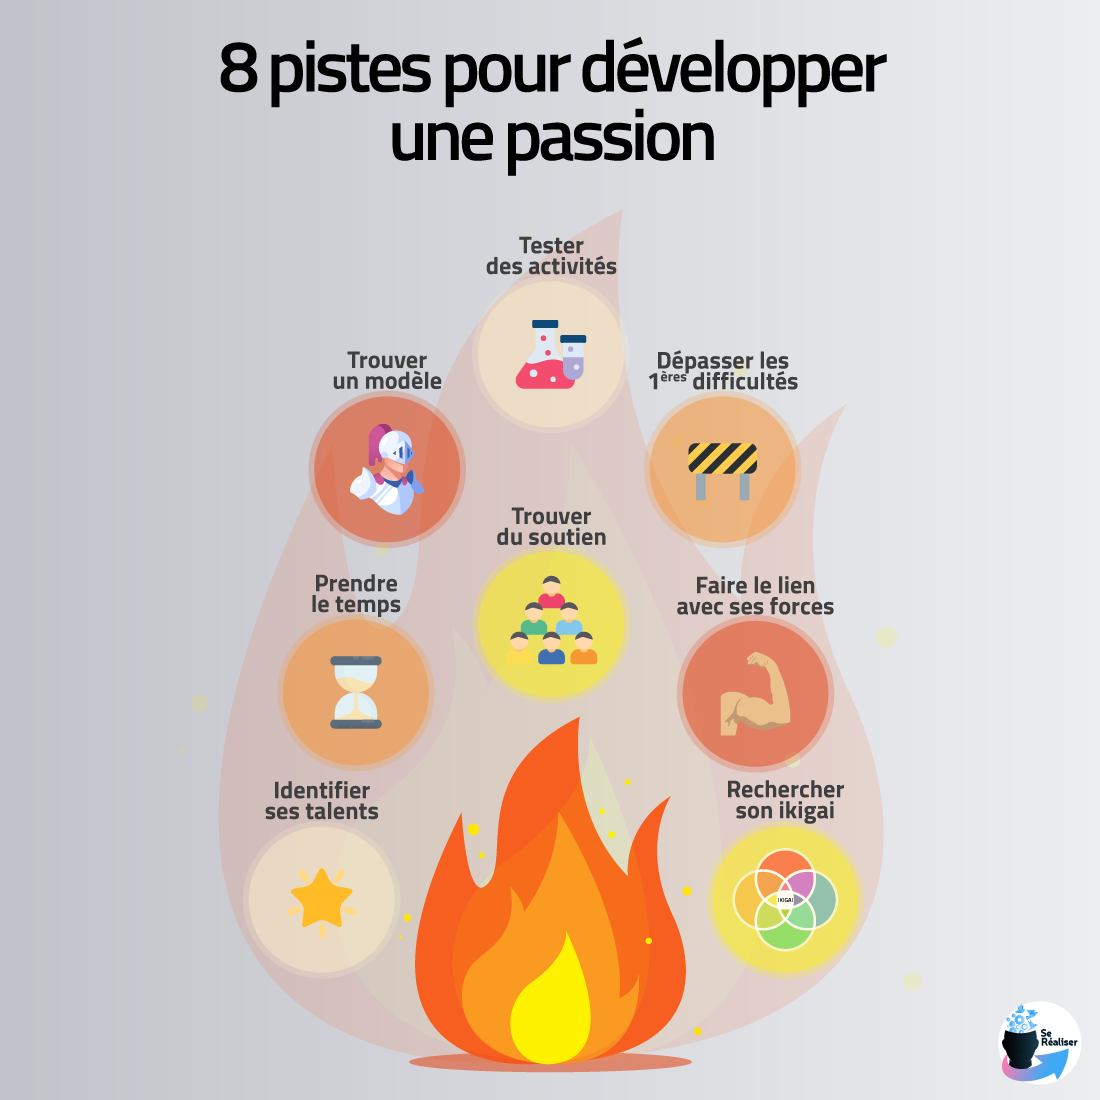 Icones représentant les 8 pistes pour développer une passion